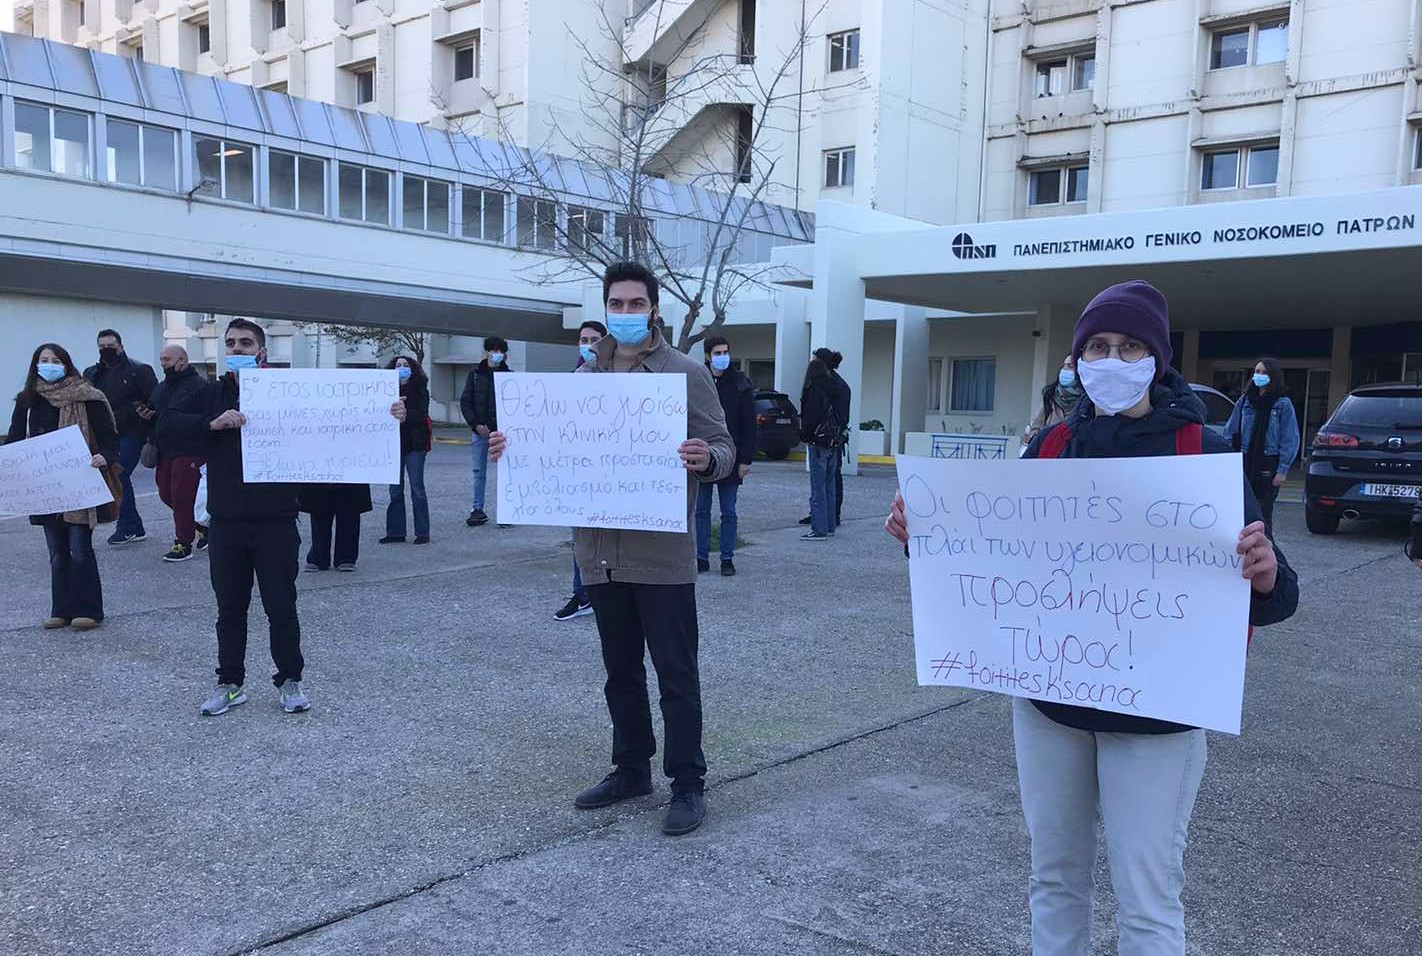  Διαμαρτυρία 5οετών φοιτητών Ιατρικής Πανεπιστημίου Πατρών: Τρεις μήνες εκτός κλινικής άσκησης